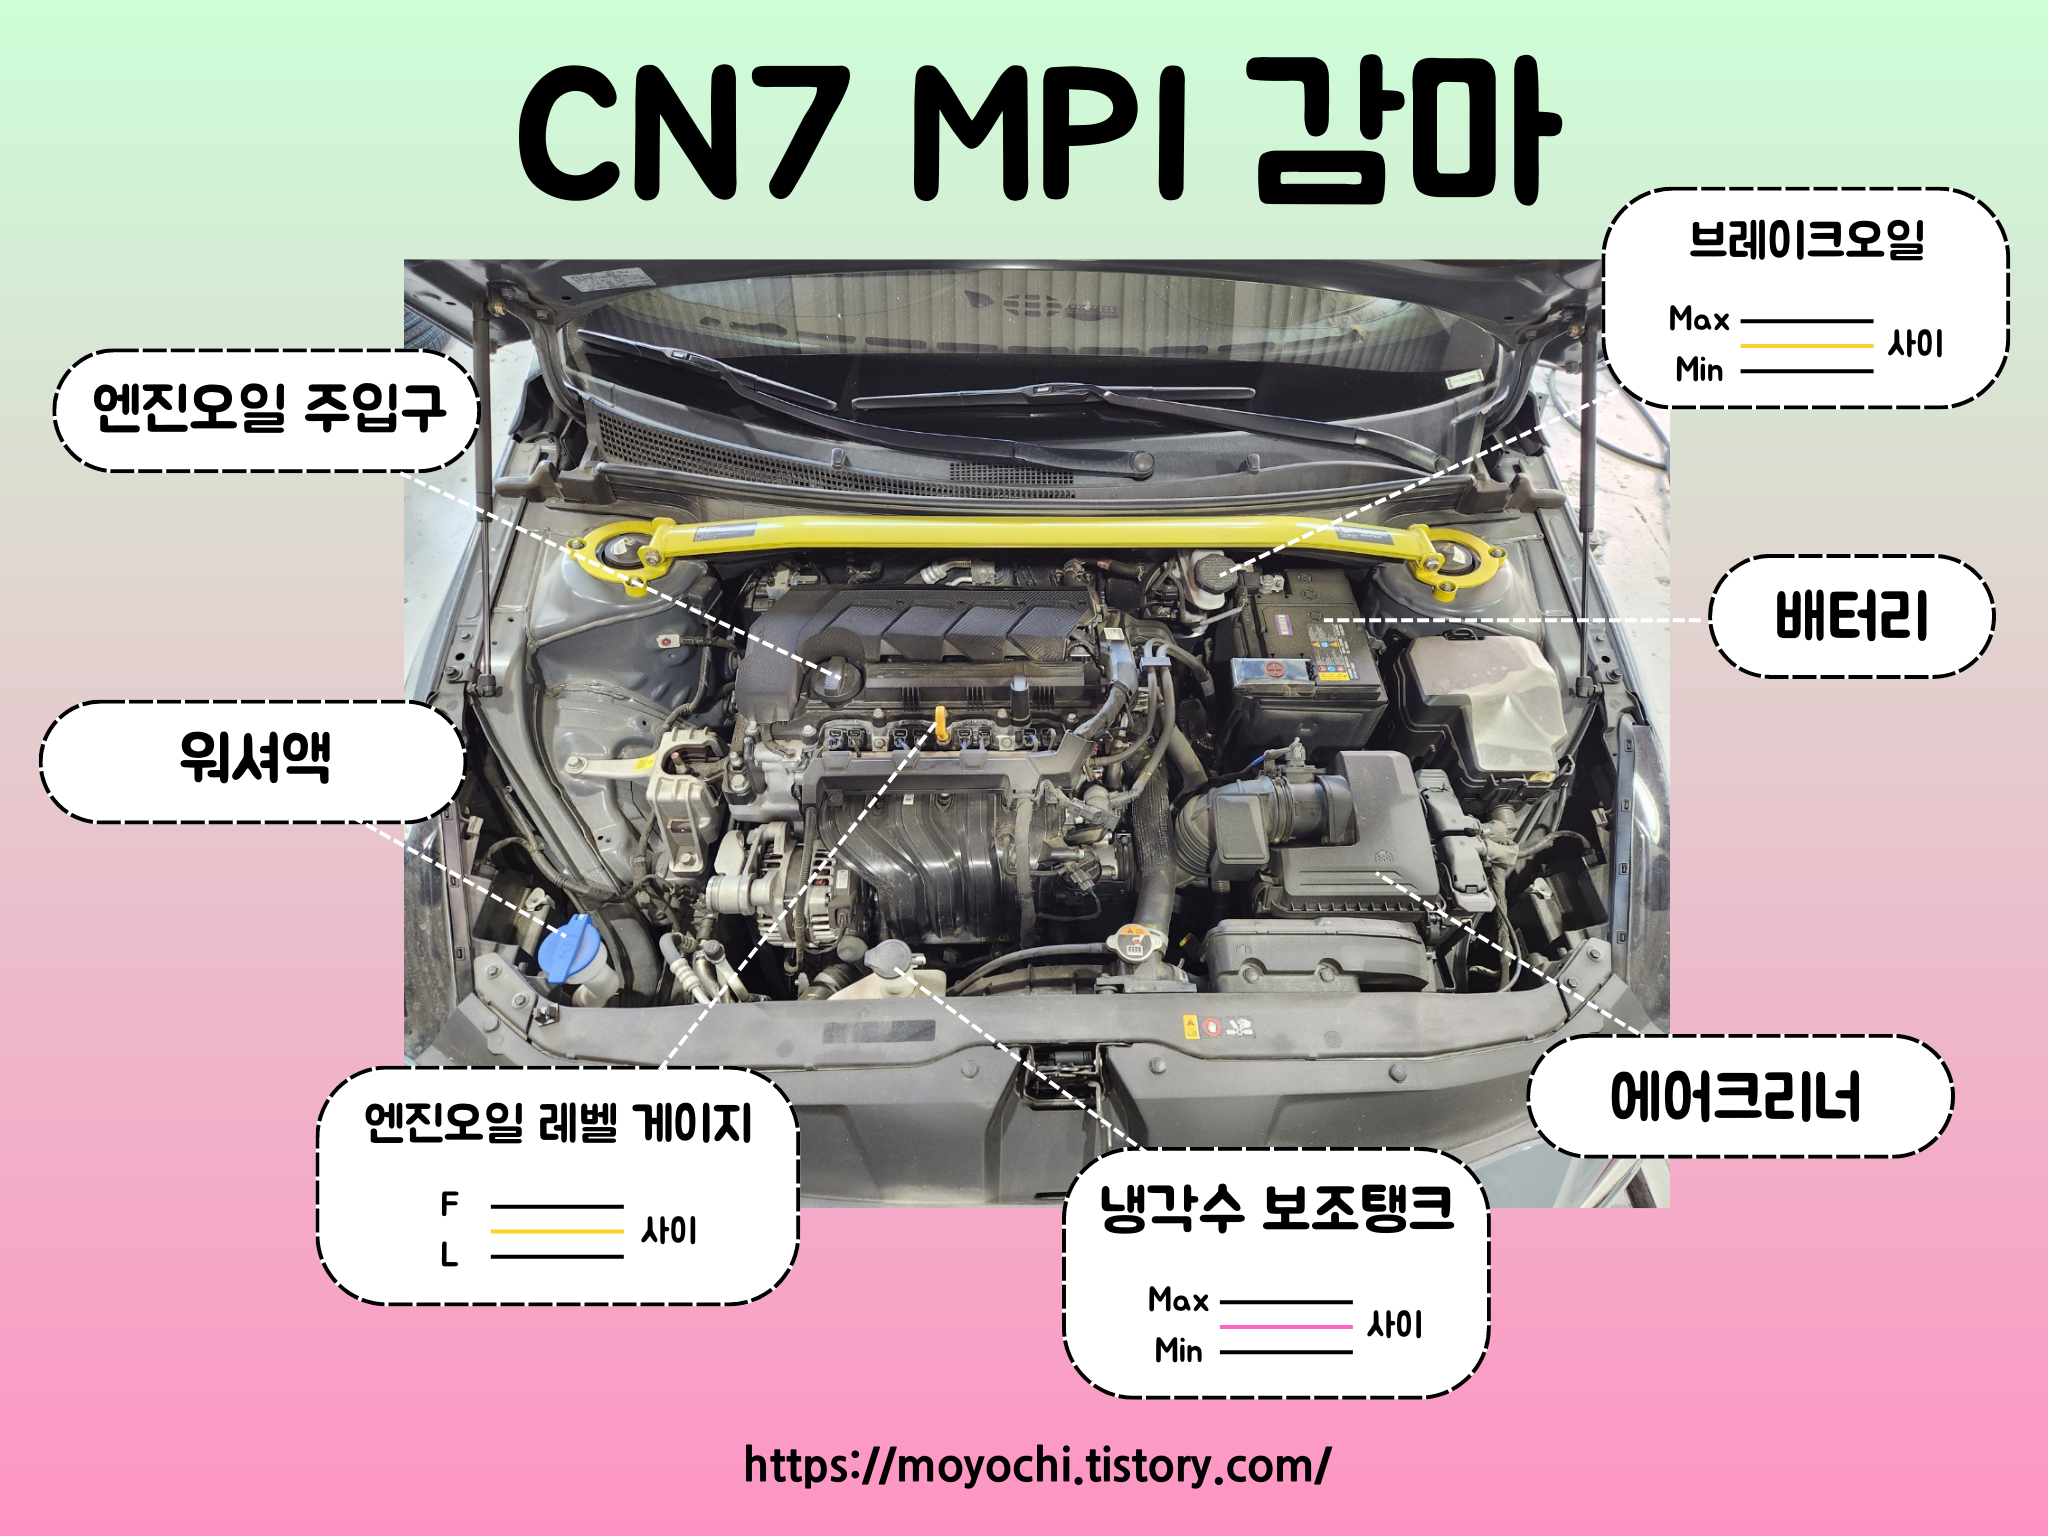 아반떼 CN7 MPI 감마 II 엔진 사진과 그 명칭입니다. 엔진오일 레벨 F와 L 두 선사이 정상&#44; 브레이크오일 Max와 Min 두 선 사이 정상&#44; 냉각수 보조탱크 Max와 Min 두 선 사이 정상.